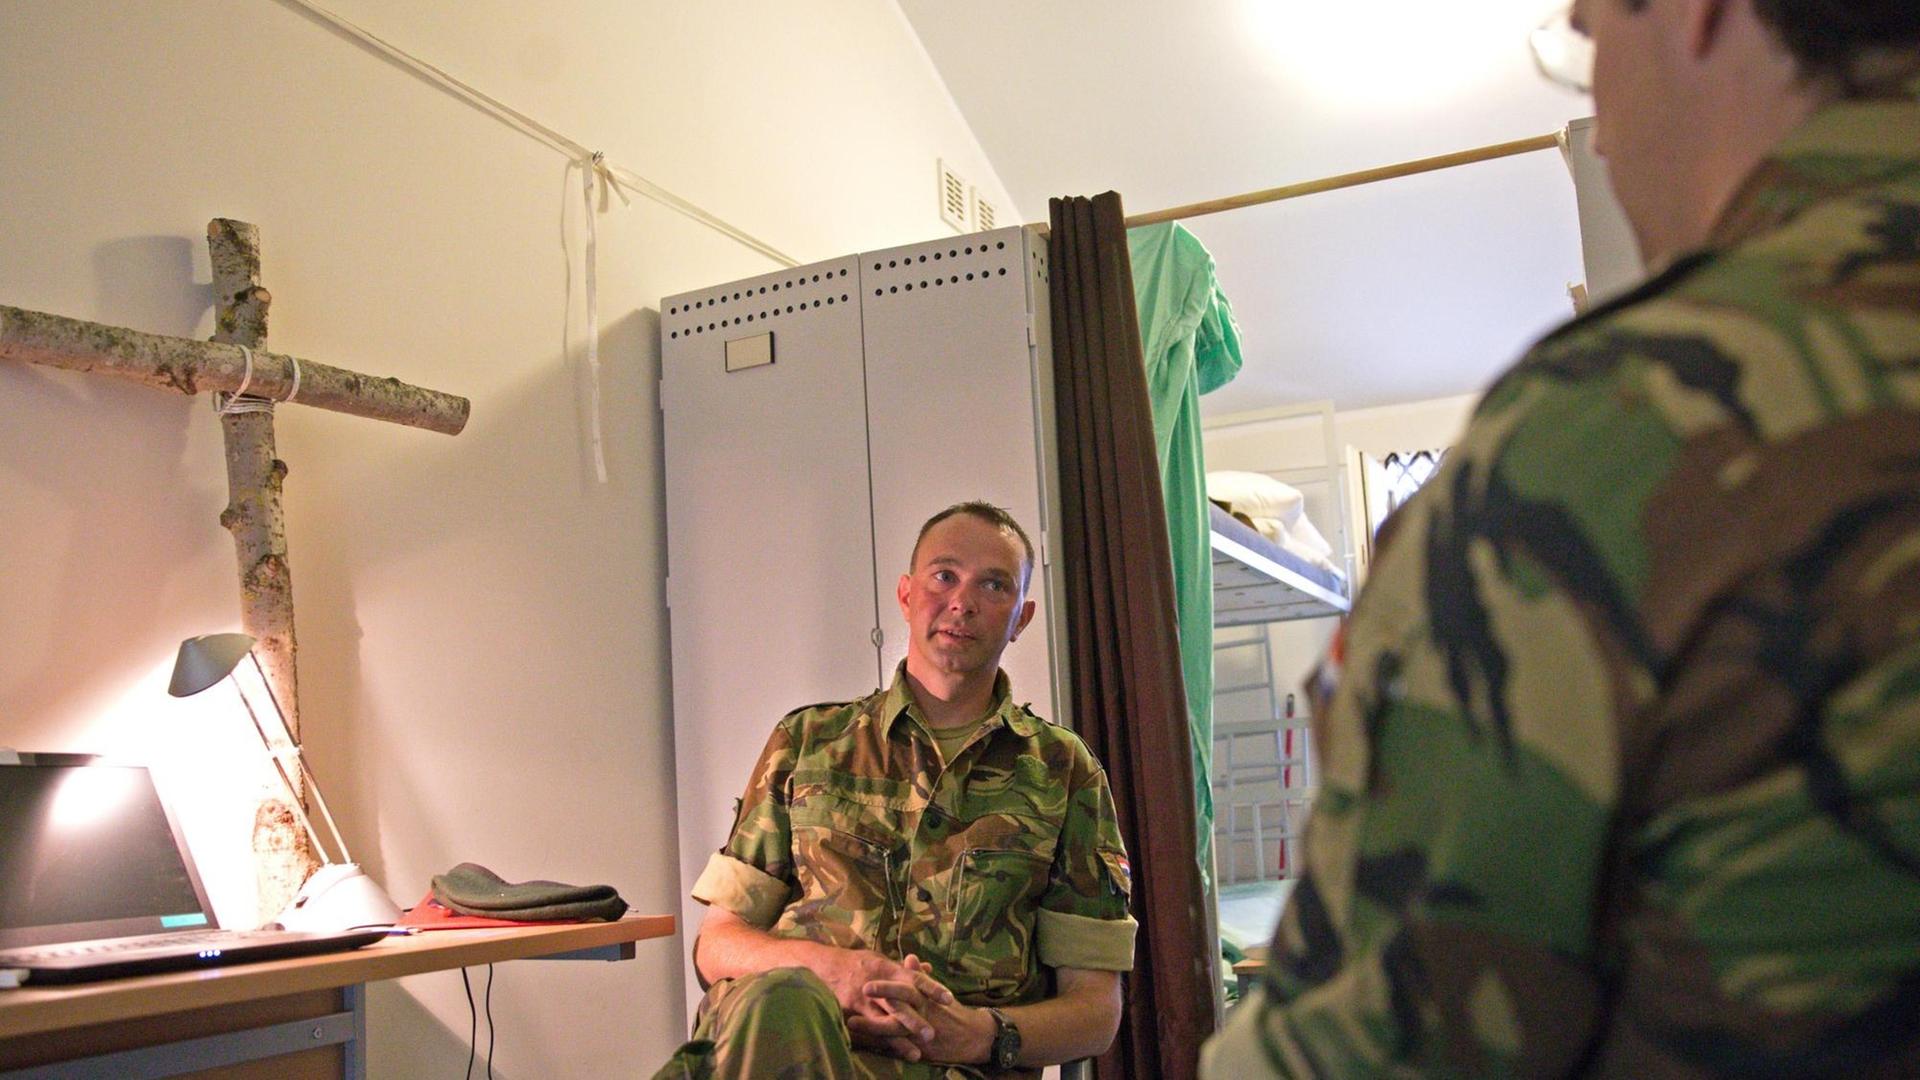 Gert-Jan van Dierendonck im Gespräch mit Soldaten. Seit Anfang des Jahres ist die NATO mit einer Battle Group in Litauen präsent. Militärkaplan in dem multinationalen Corps ist der Holländer Gert-Jan van Dierendonck.